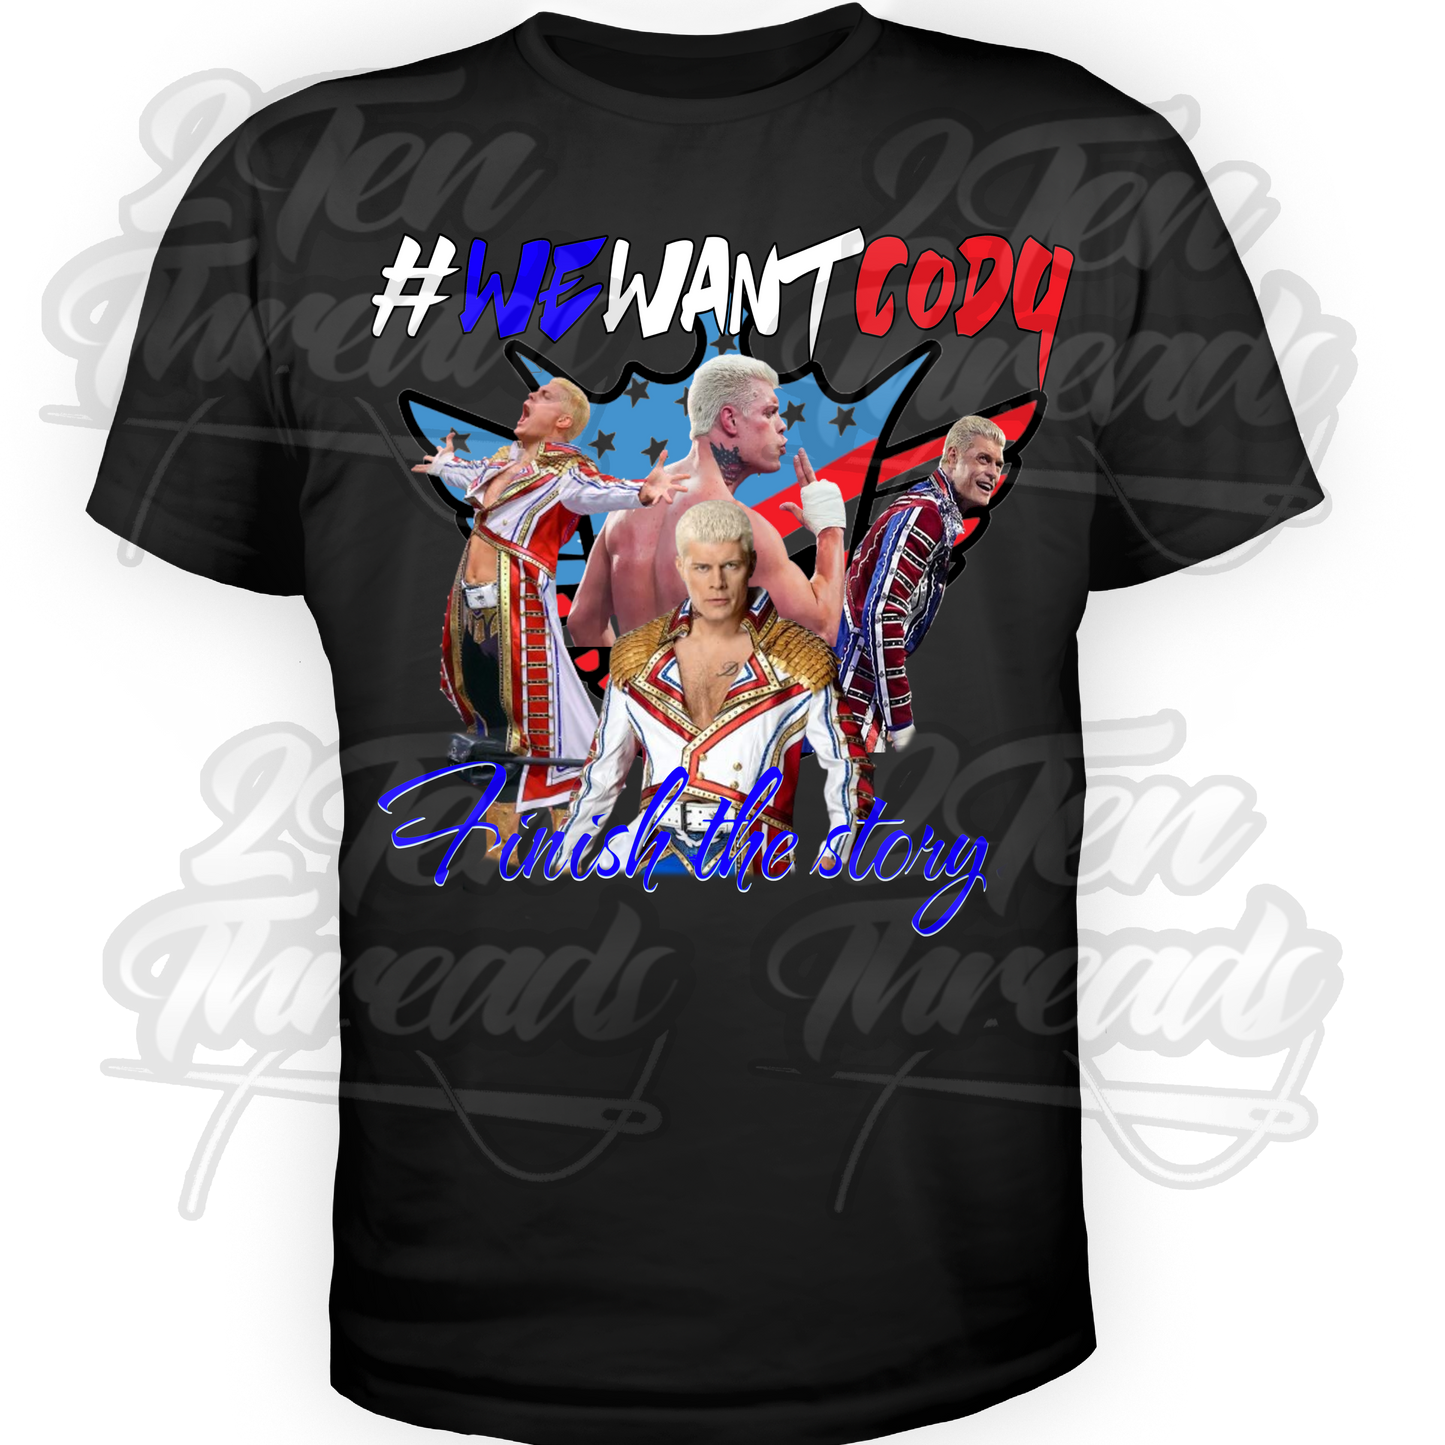 Cody - #WeWantCody Shirt